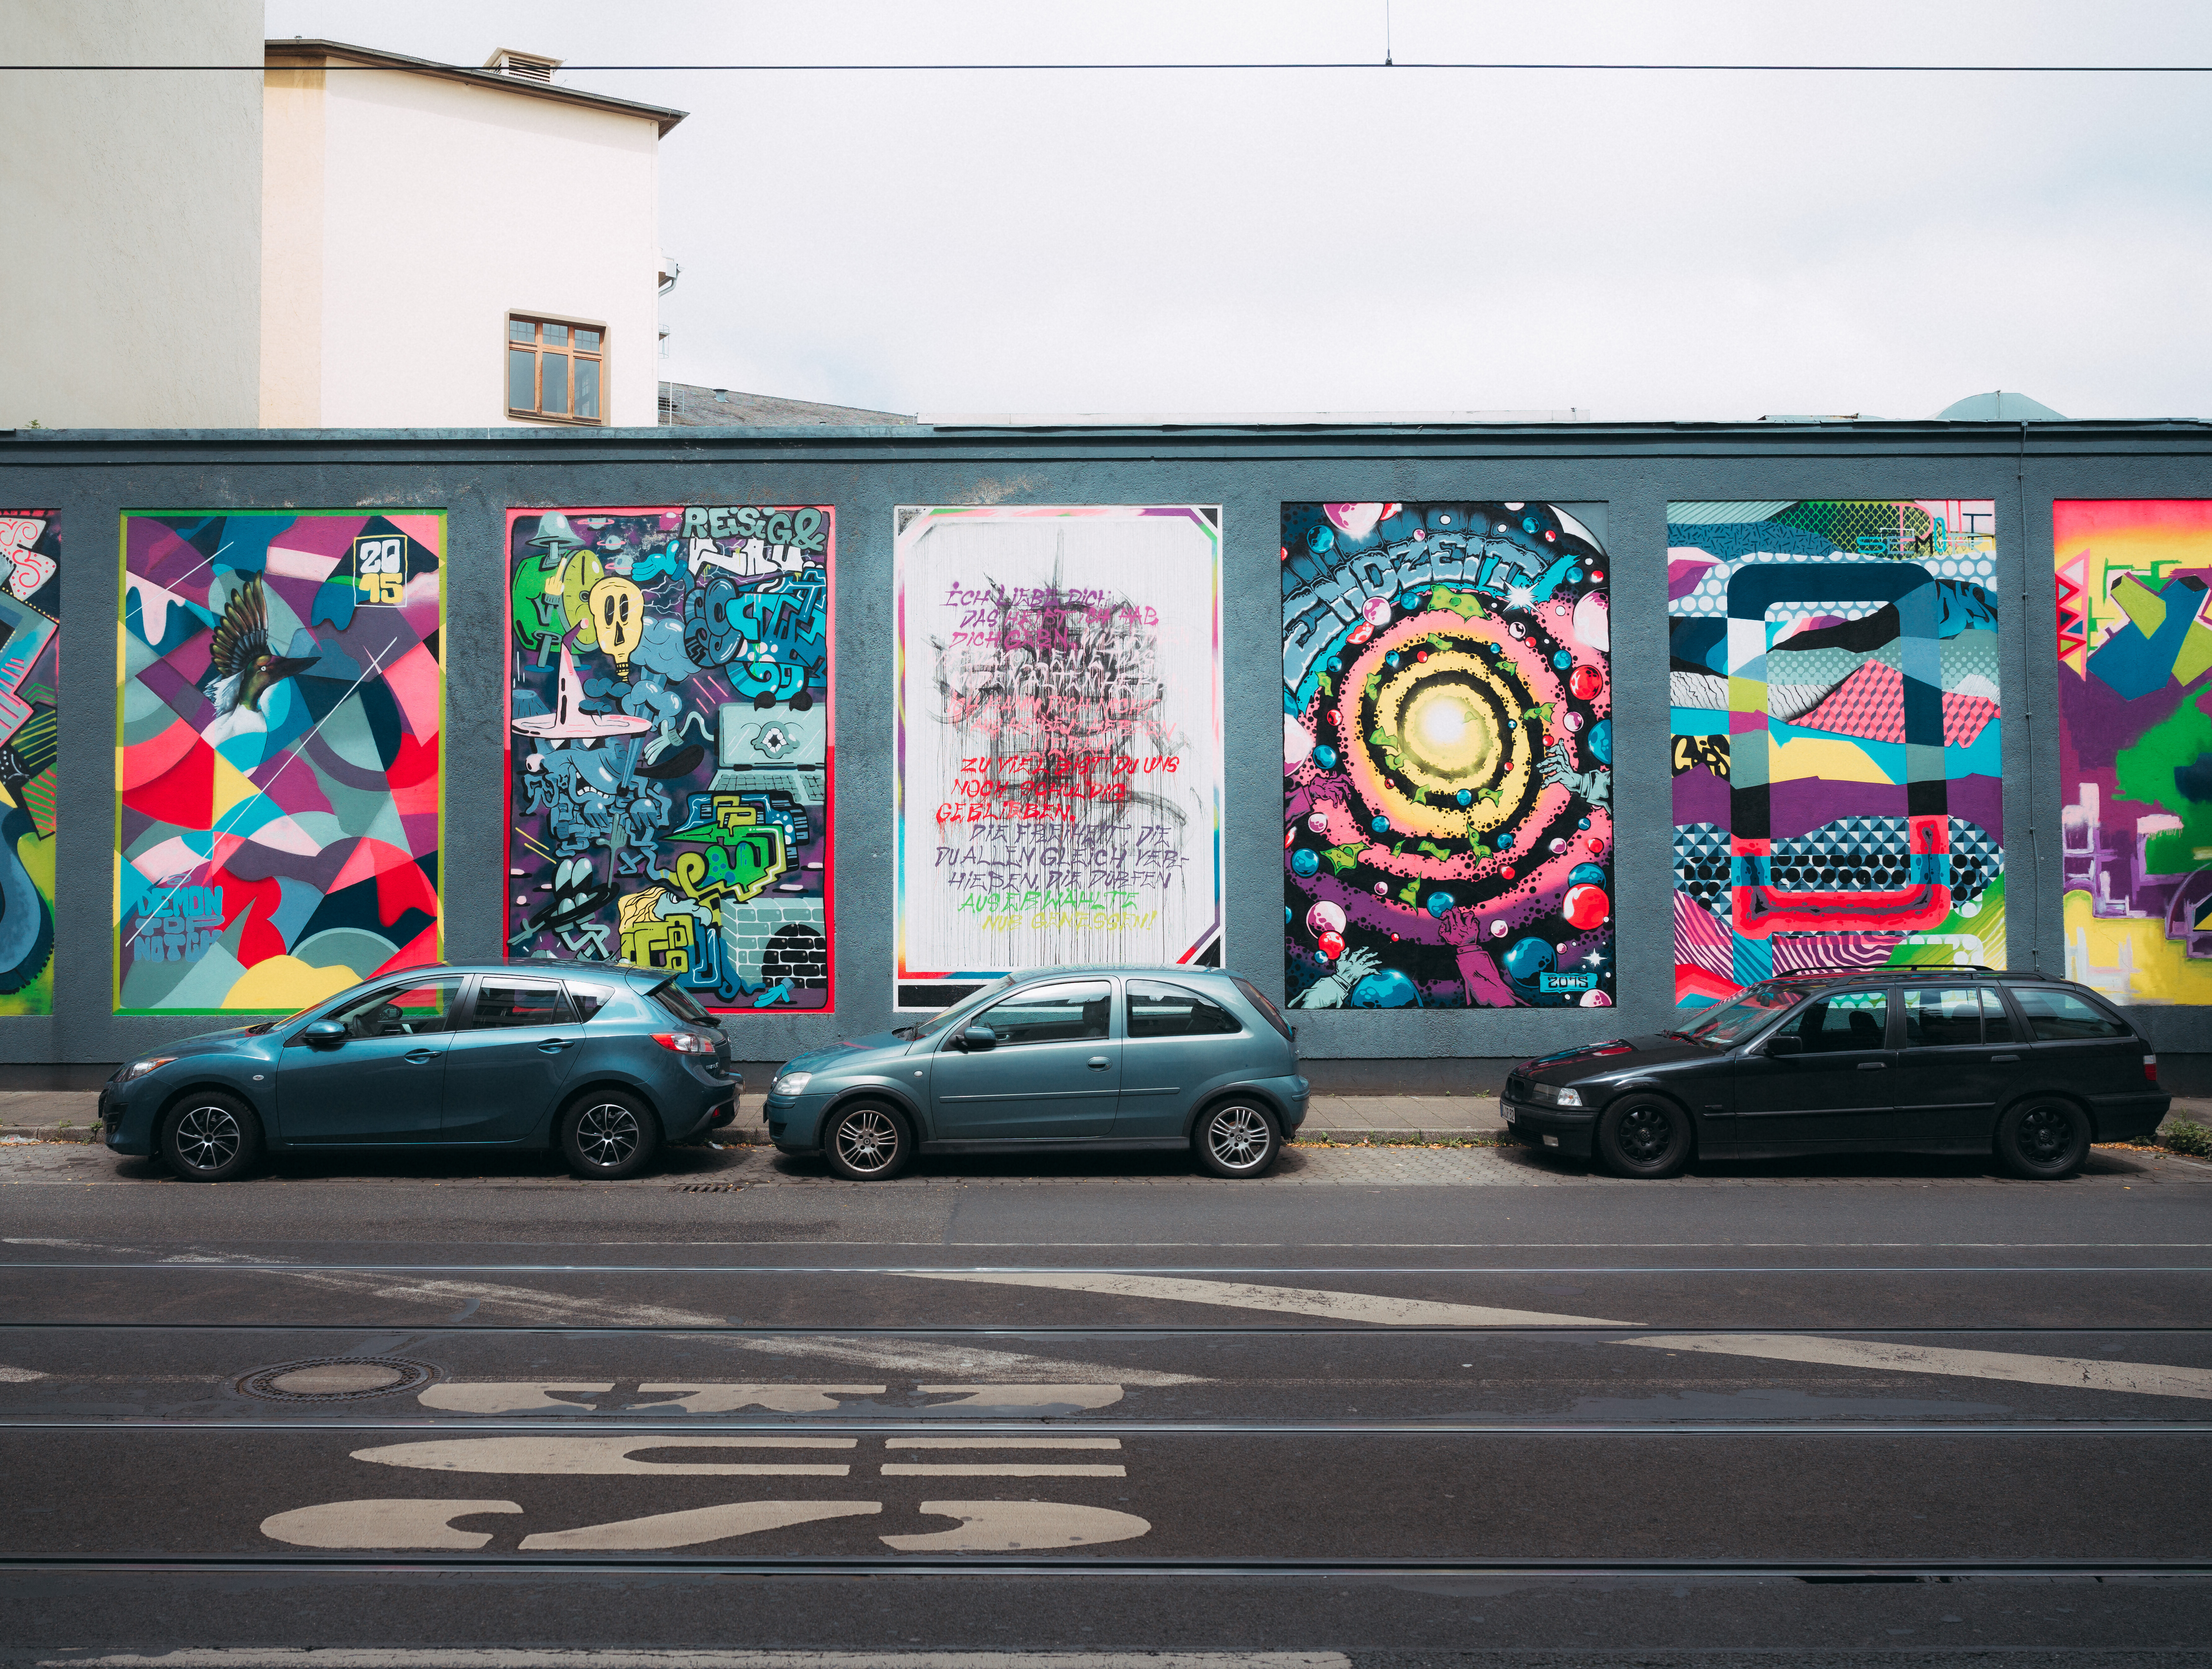 Bunte Street-Art-Mauer in Düsseldorf mit Kunstwerken wie in einer Galerie